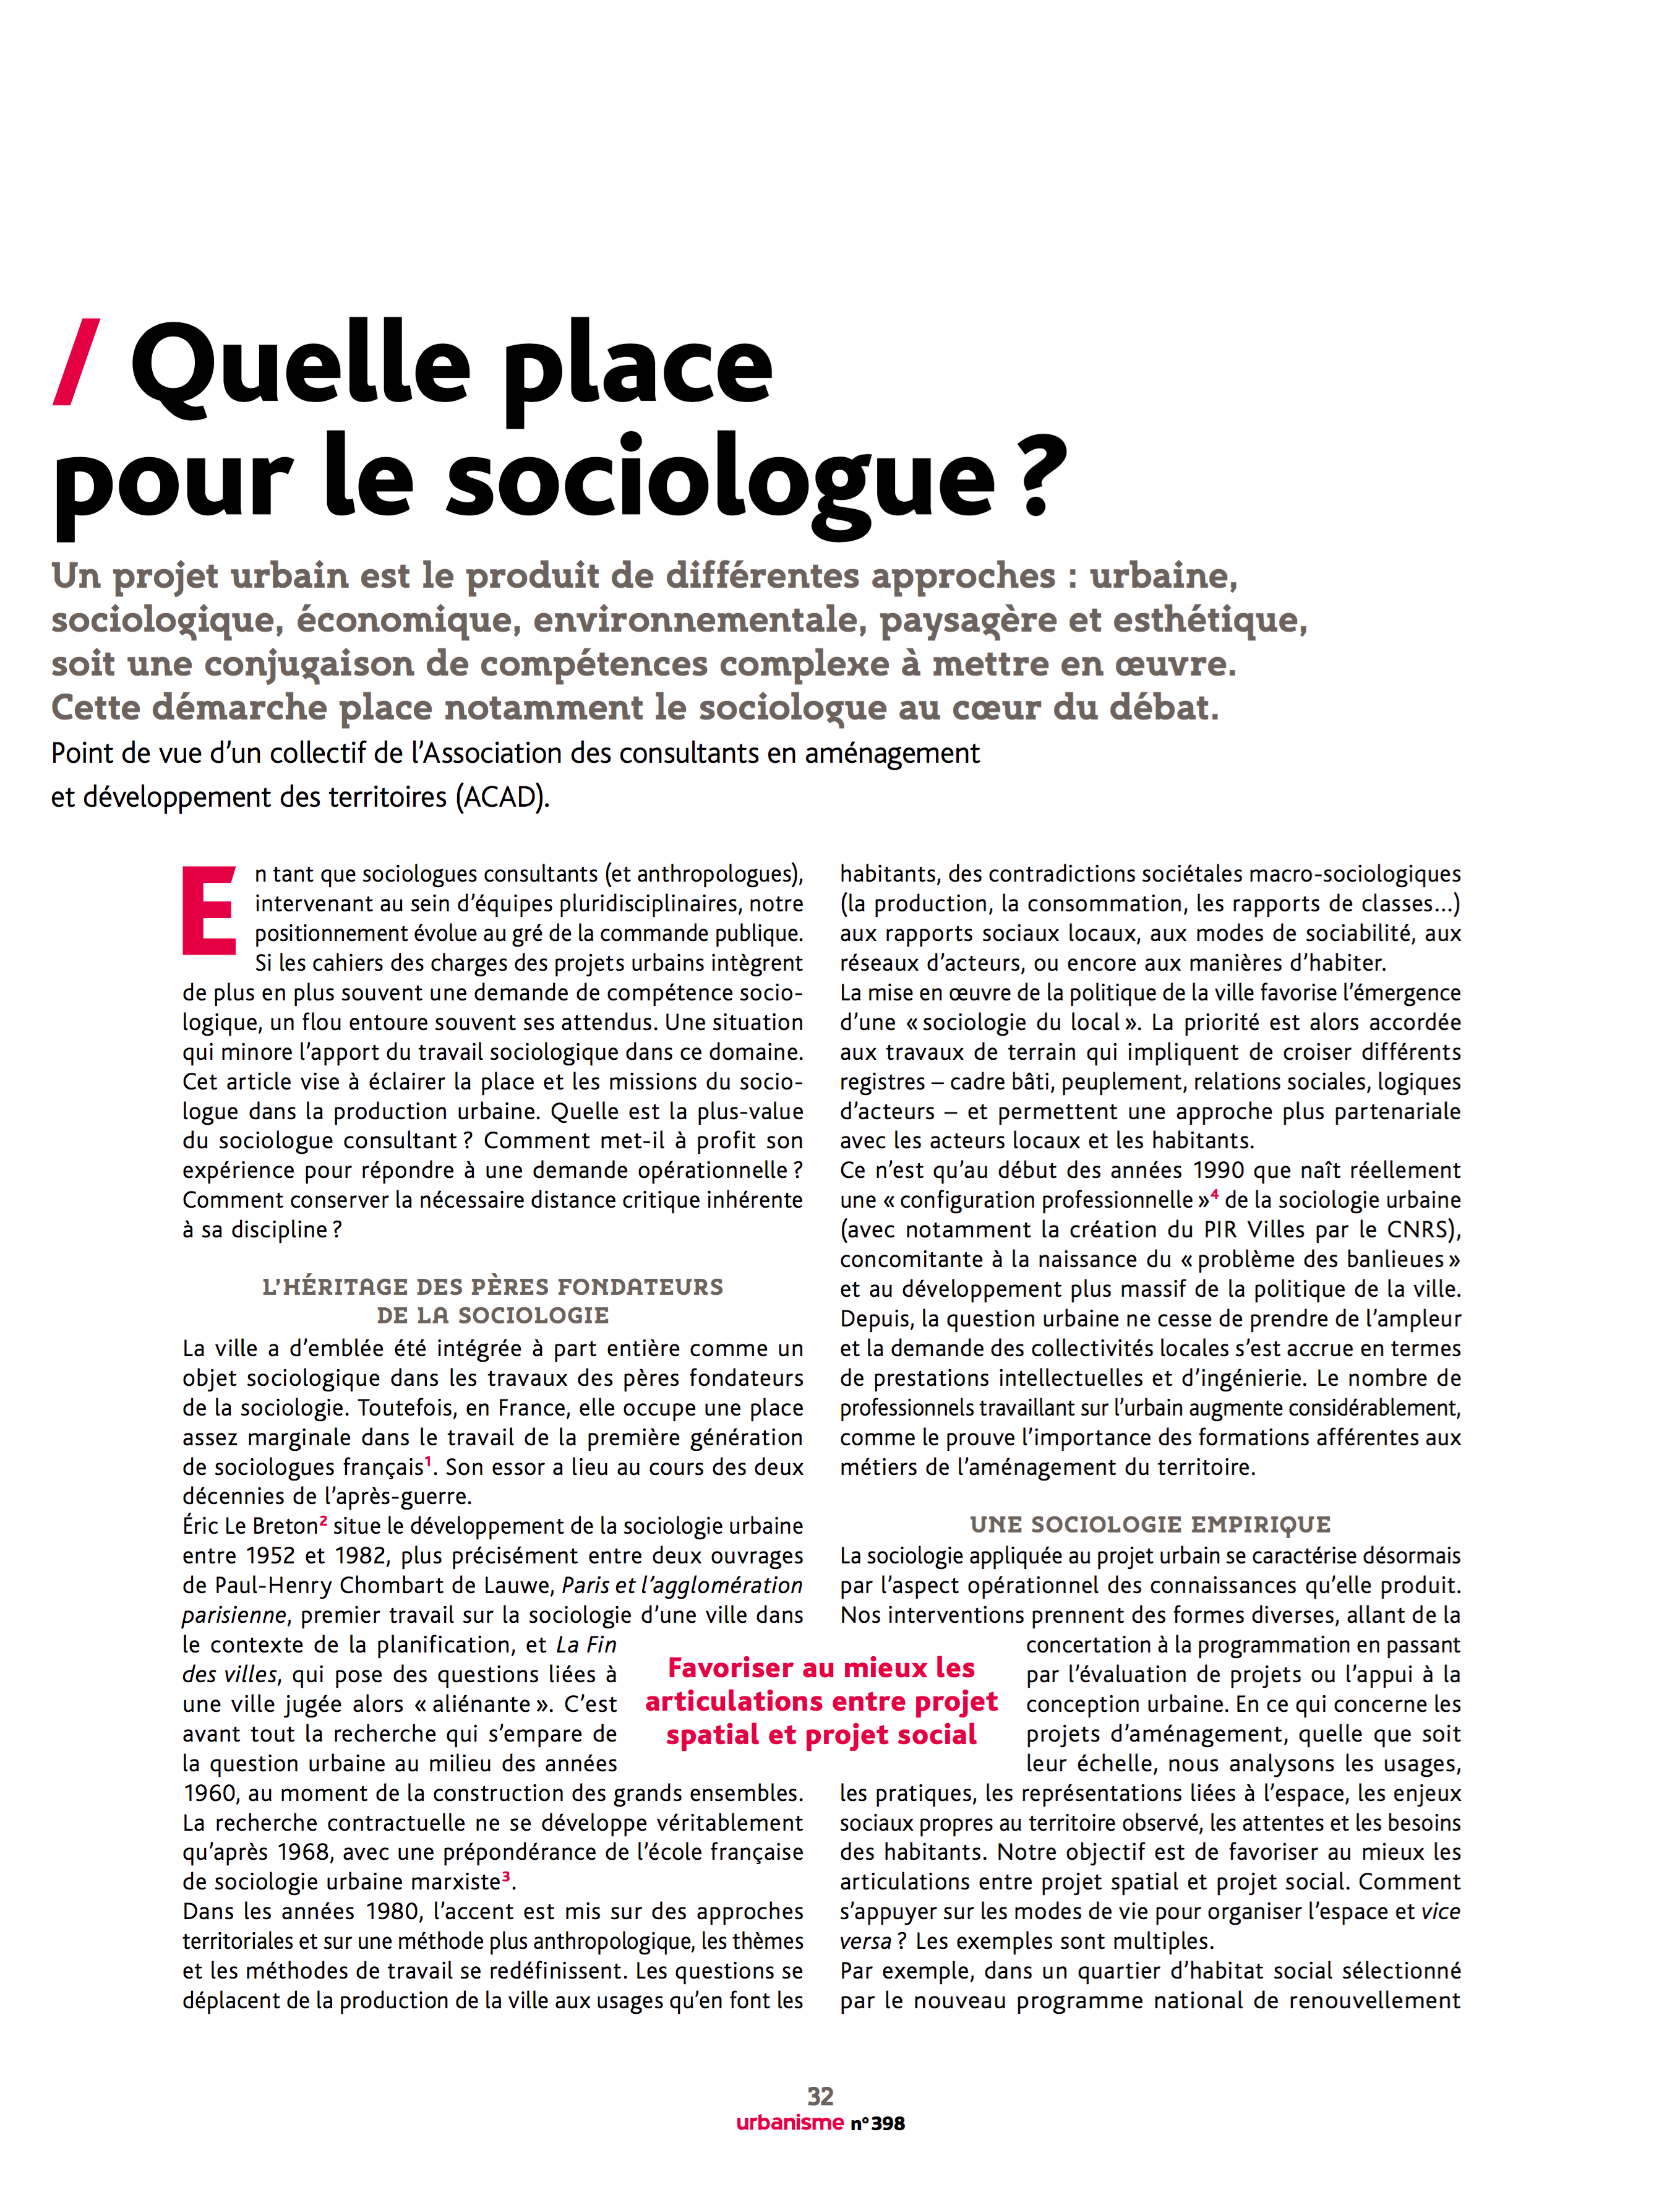 Quelle place pour le sociologue ?, Urbanisme n°398 (novembre 2015), pp. 32-34